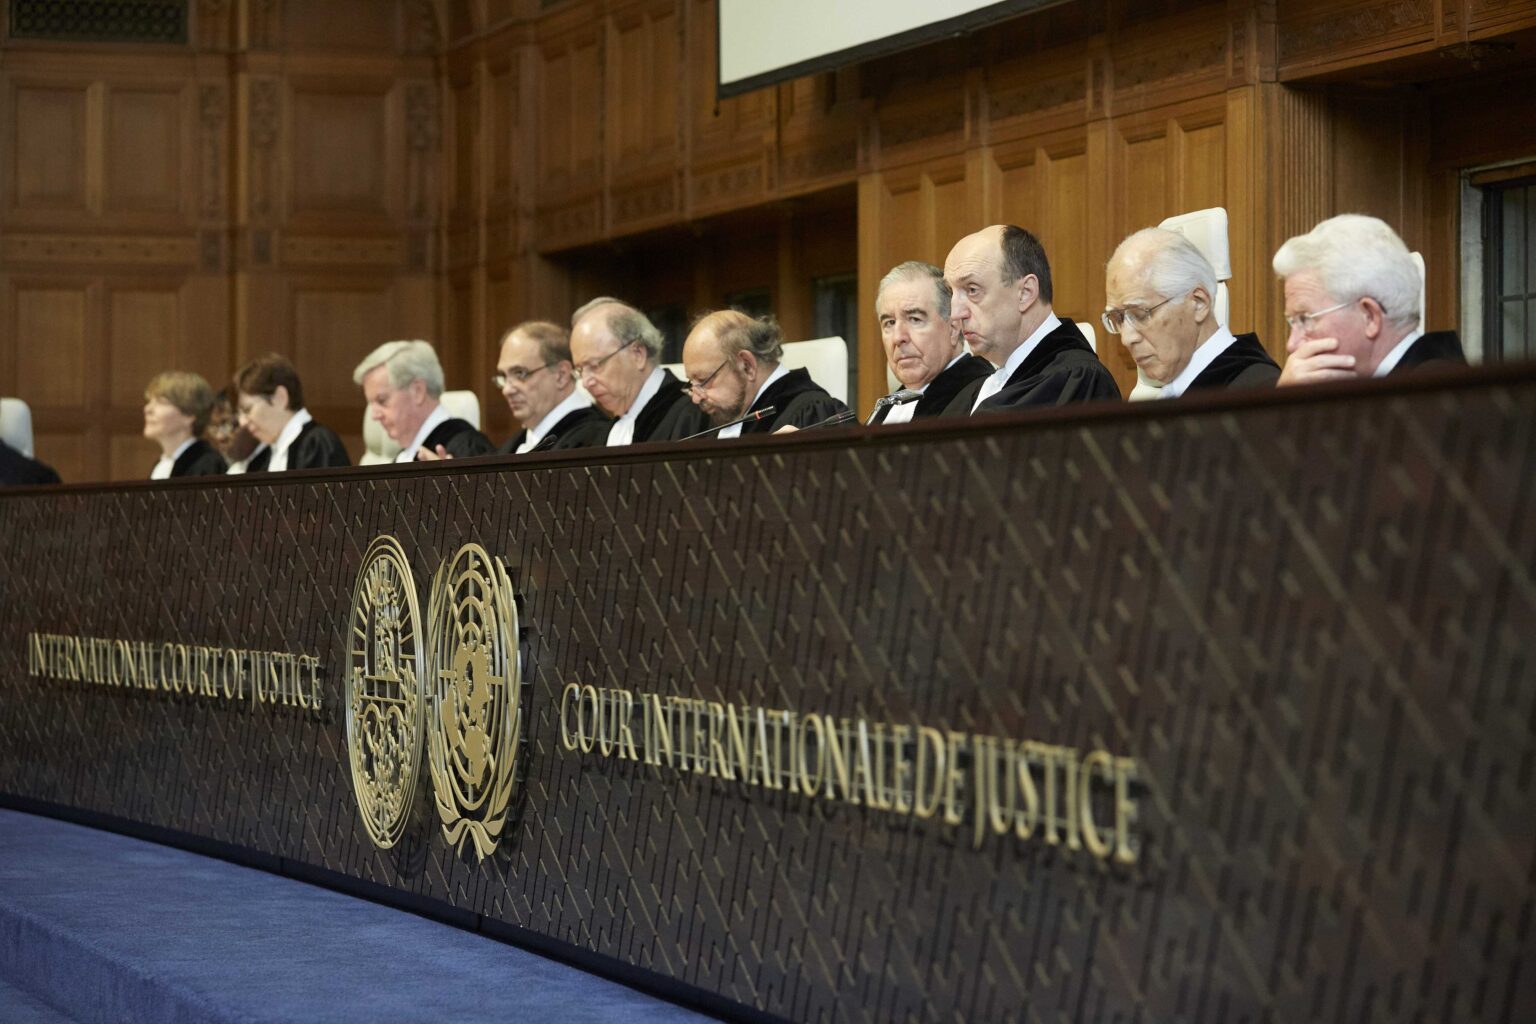 Η Αρμενία παρουσίασε στοιχεία εθνοκάθαρσης από το Αζερμπαϊτζάν στο Διεθνές Δικαστήριο της Χάγης